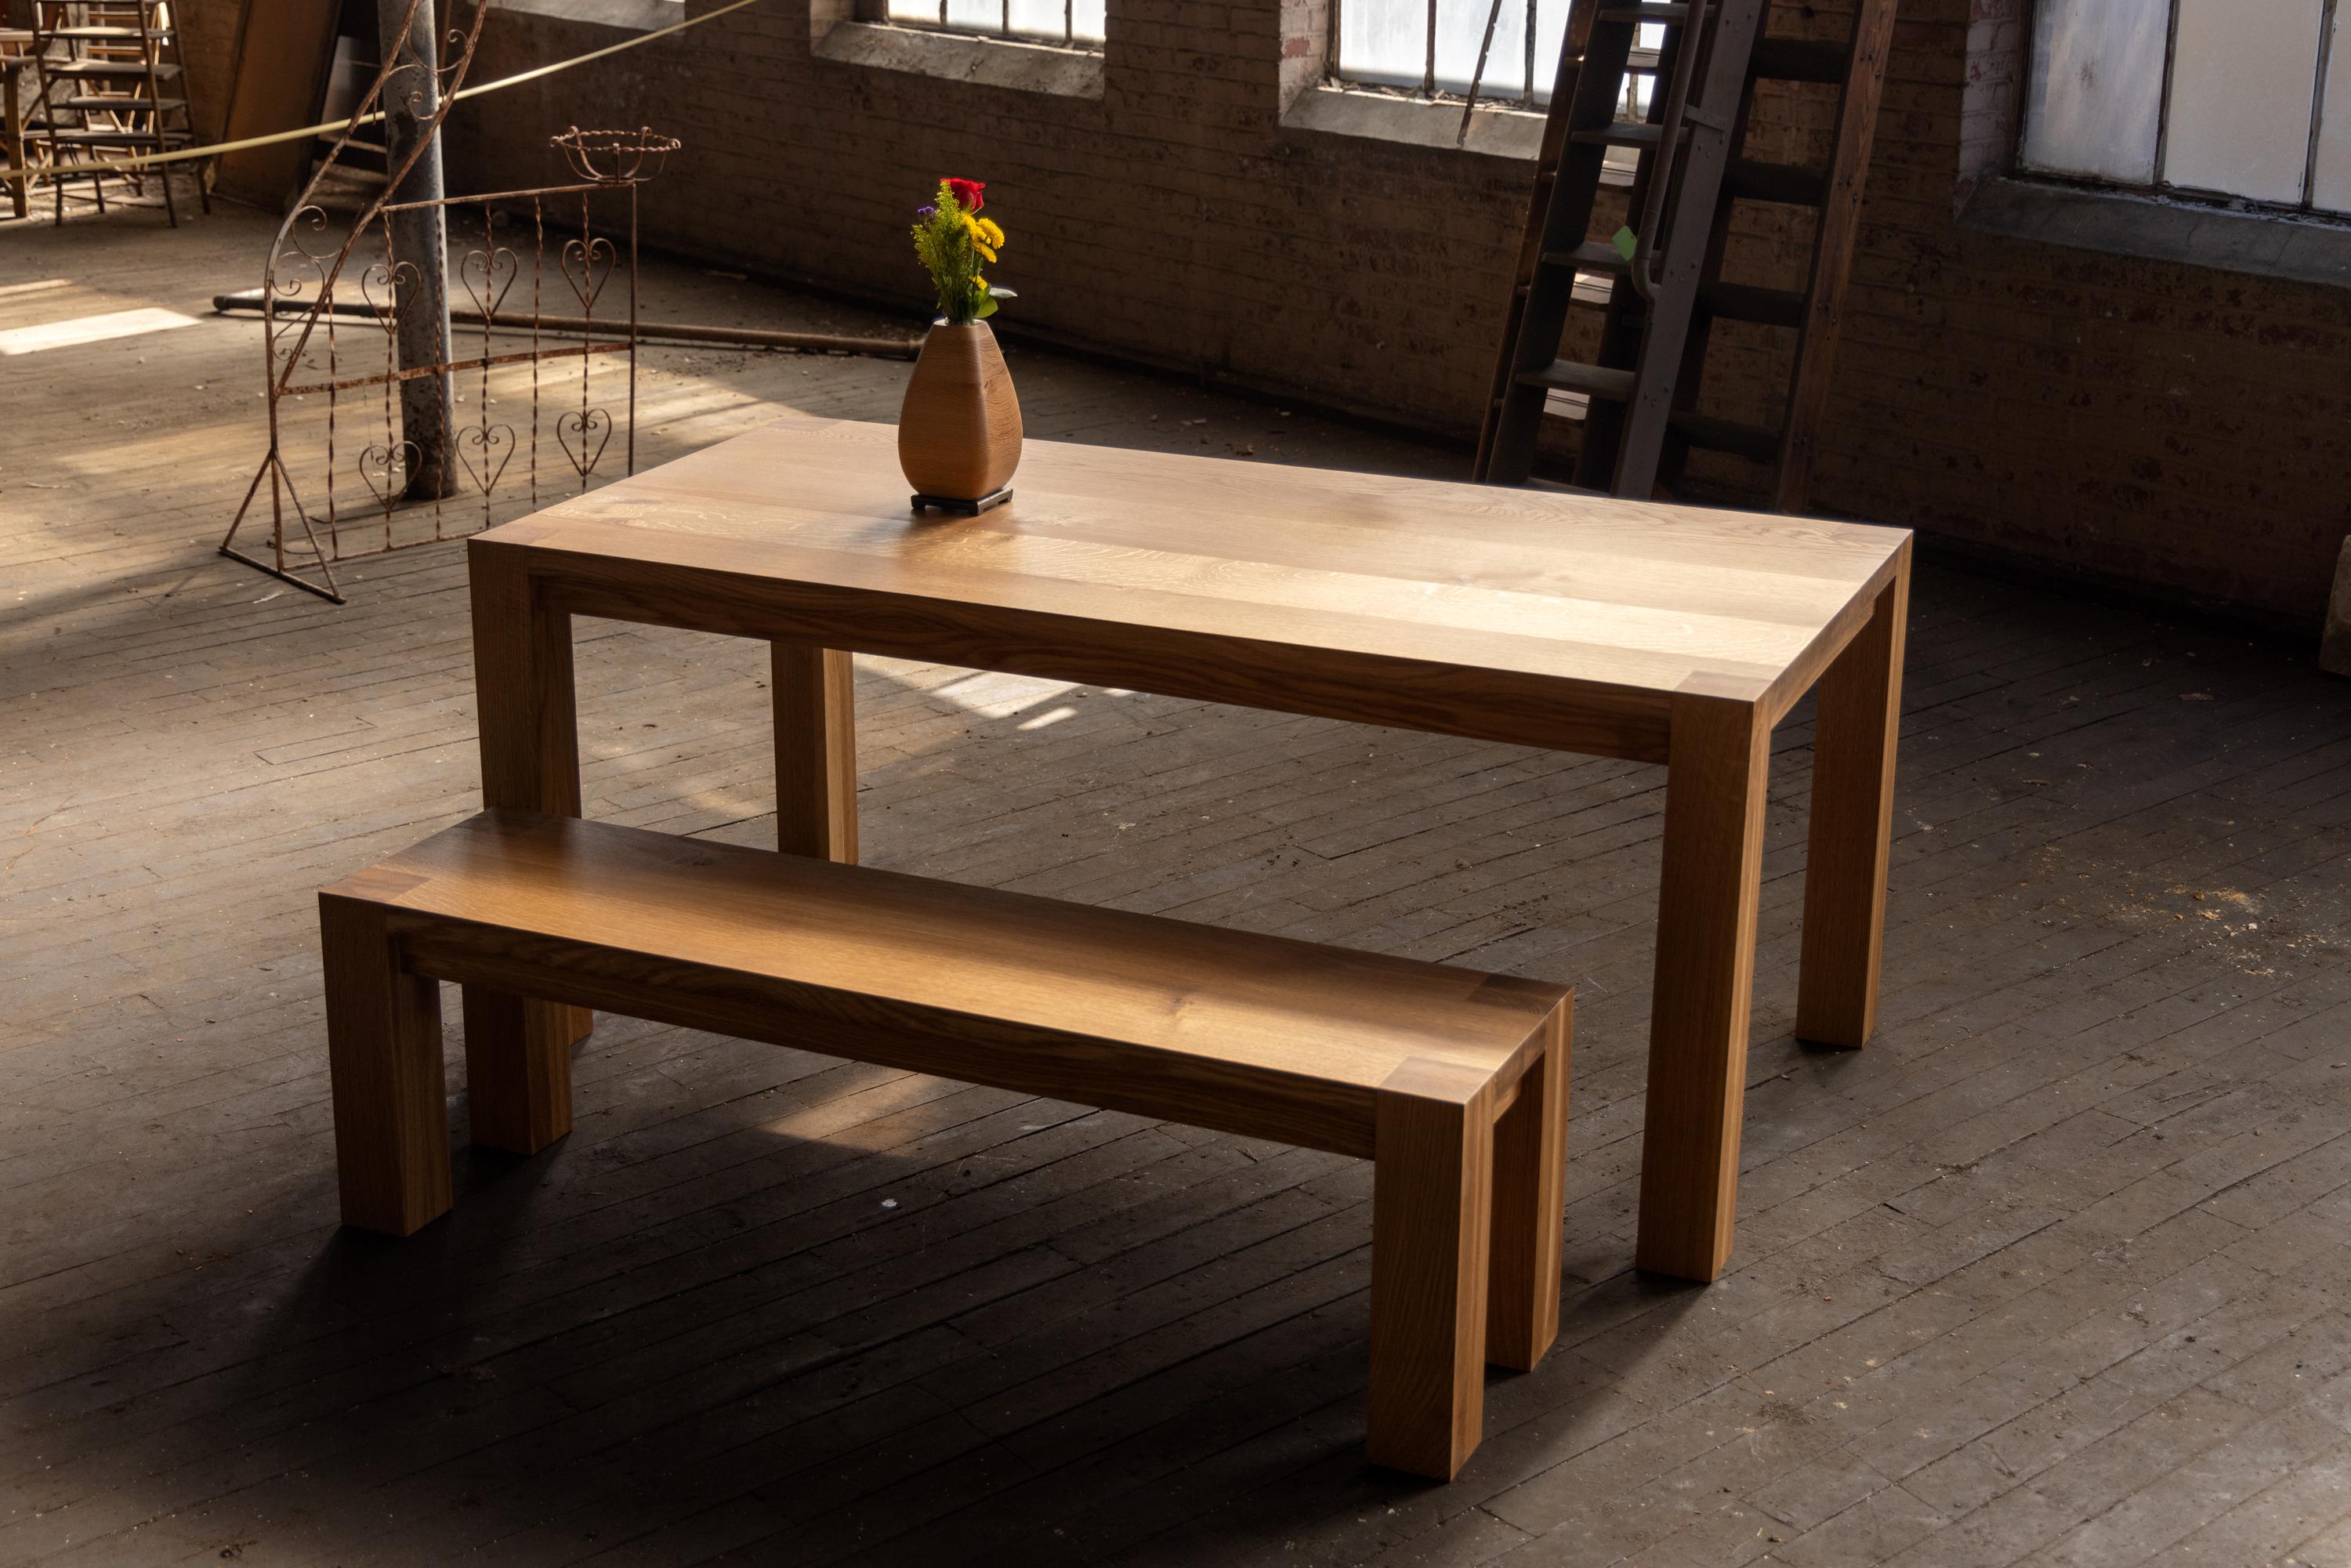 Unser Parsons-Tisch (die Bank ist separat erhältlich) ist aus massivem urbanem Hartholz handgefertigt. Der moderne Esstisch aus Holz hat klare Linien und ein funktionelles Design. Er ist mit modernen Linien und traditionellen Tischlerarbeiten